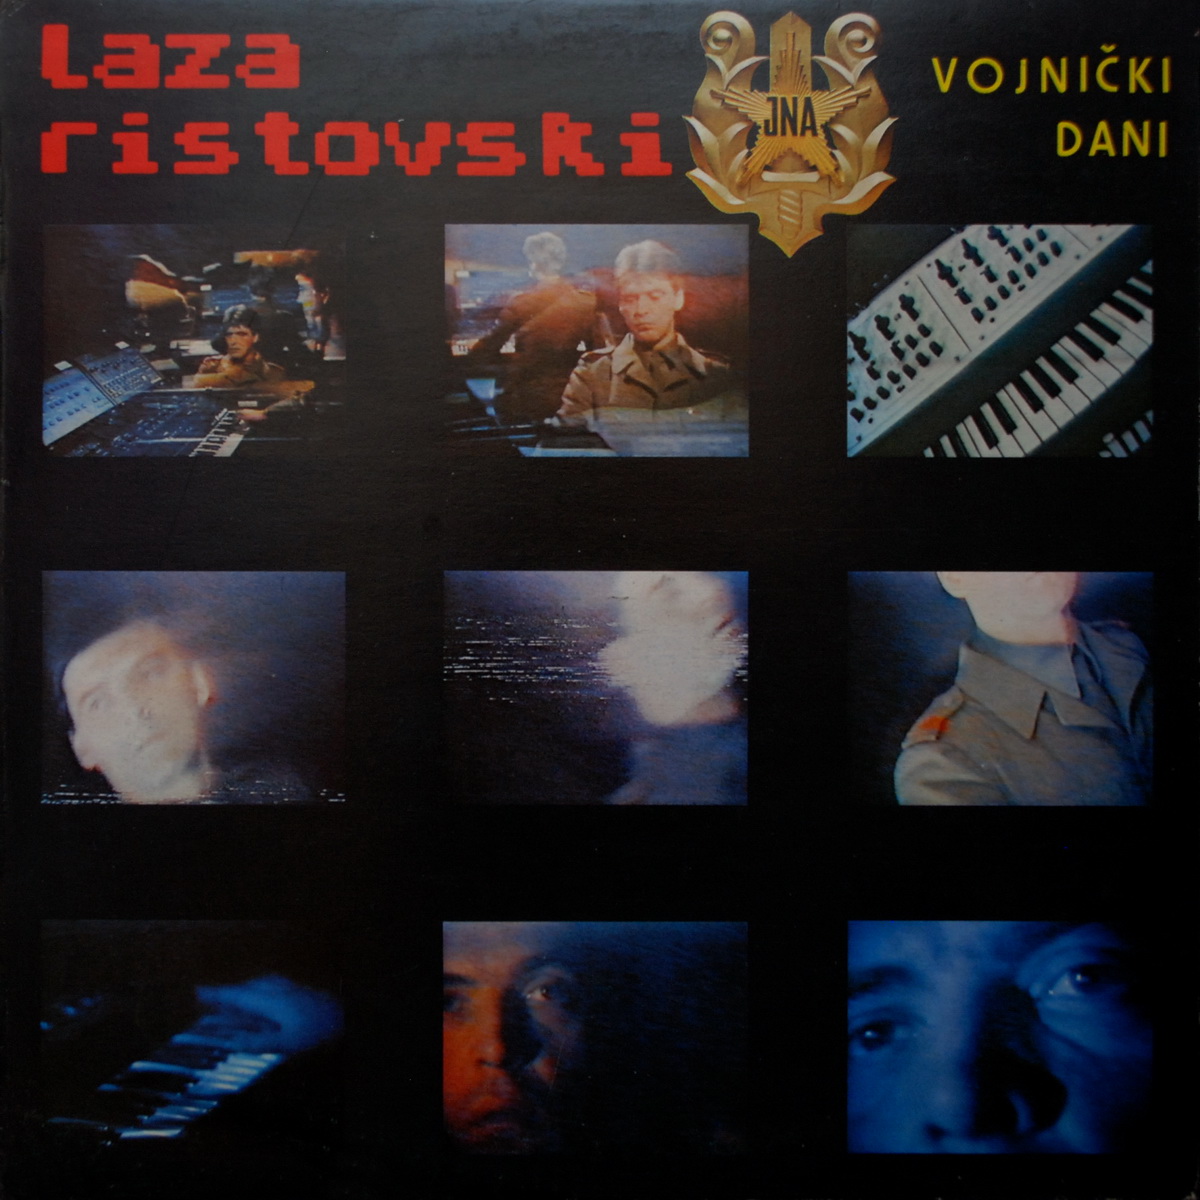 Laza Ristovski 1984 Vojnicki dani A